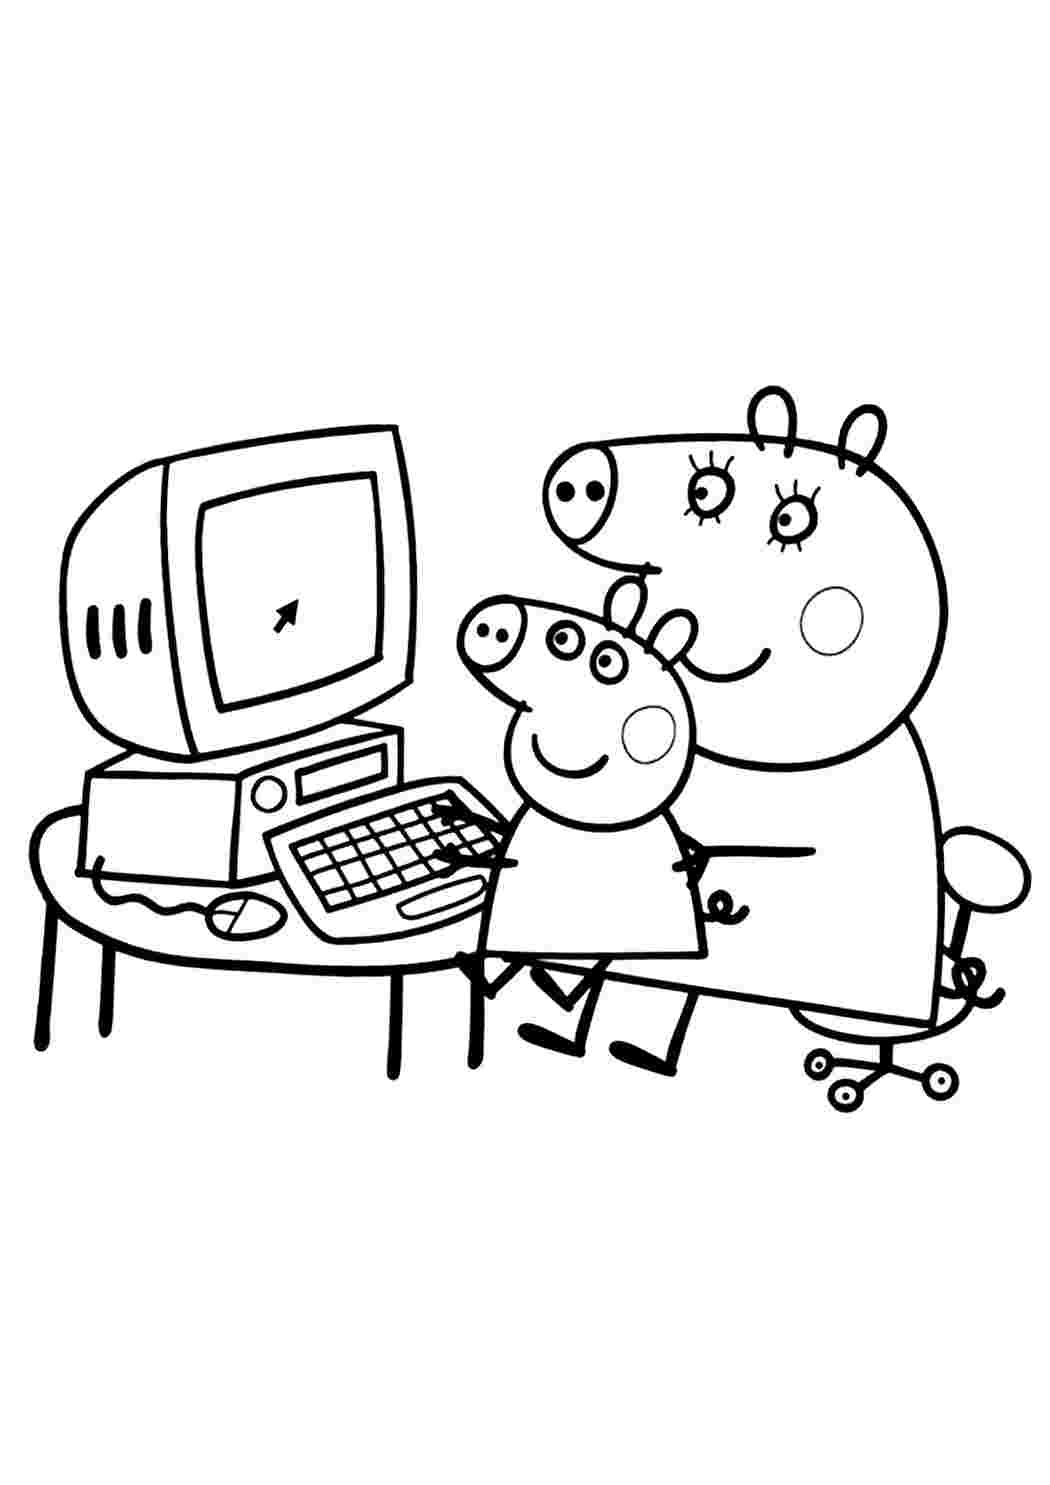 Игры Раскраски для Девочек - Онлайн Бесплатно!